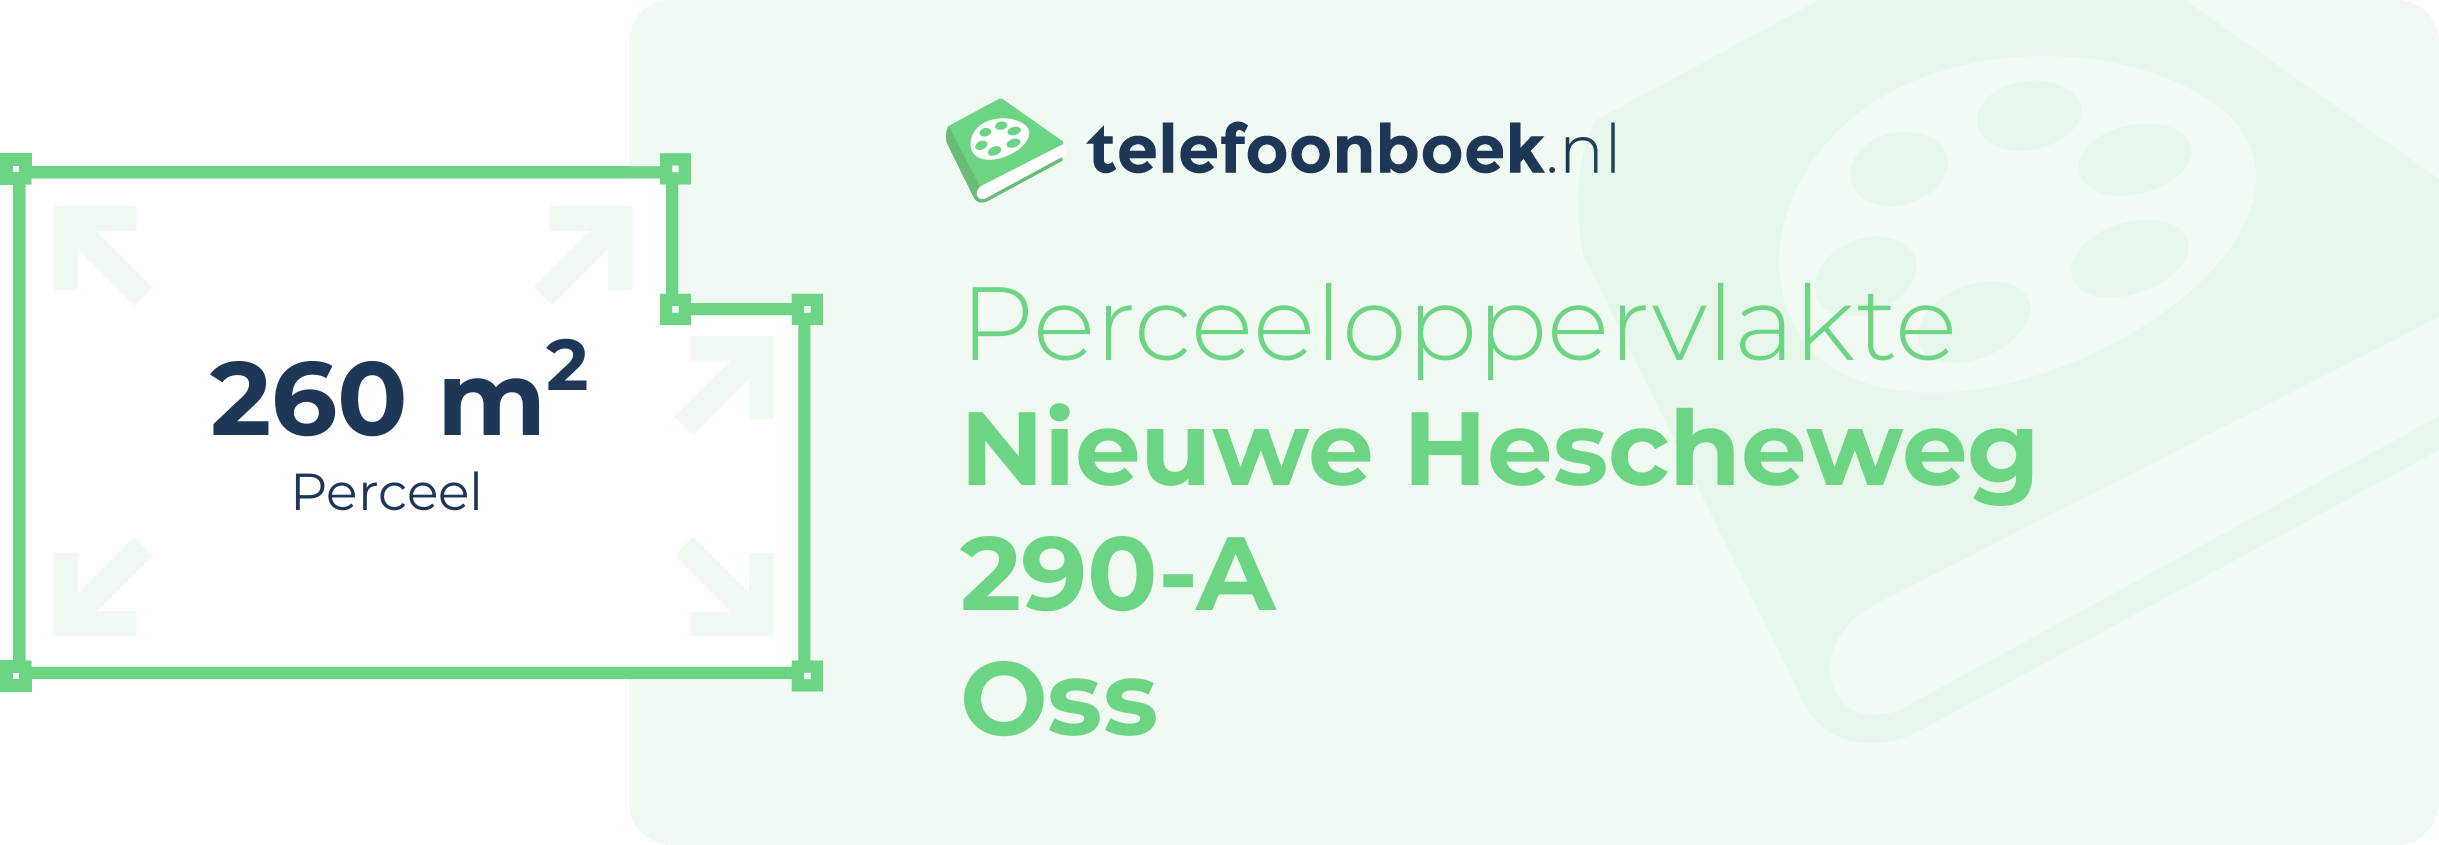 Perceeloppervlakte Nieuwe Hescheweg 290-A Oss